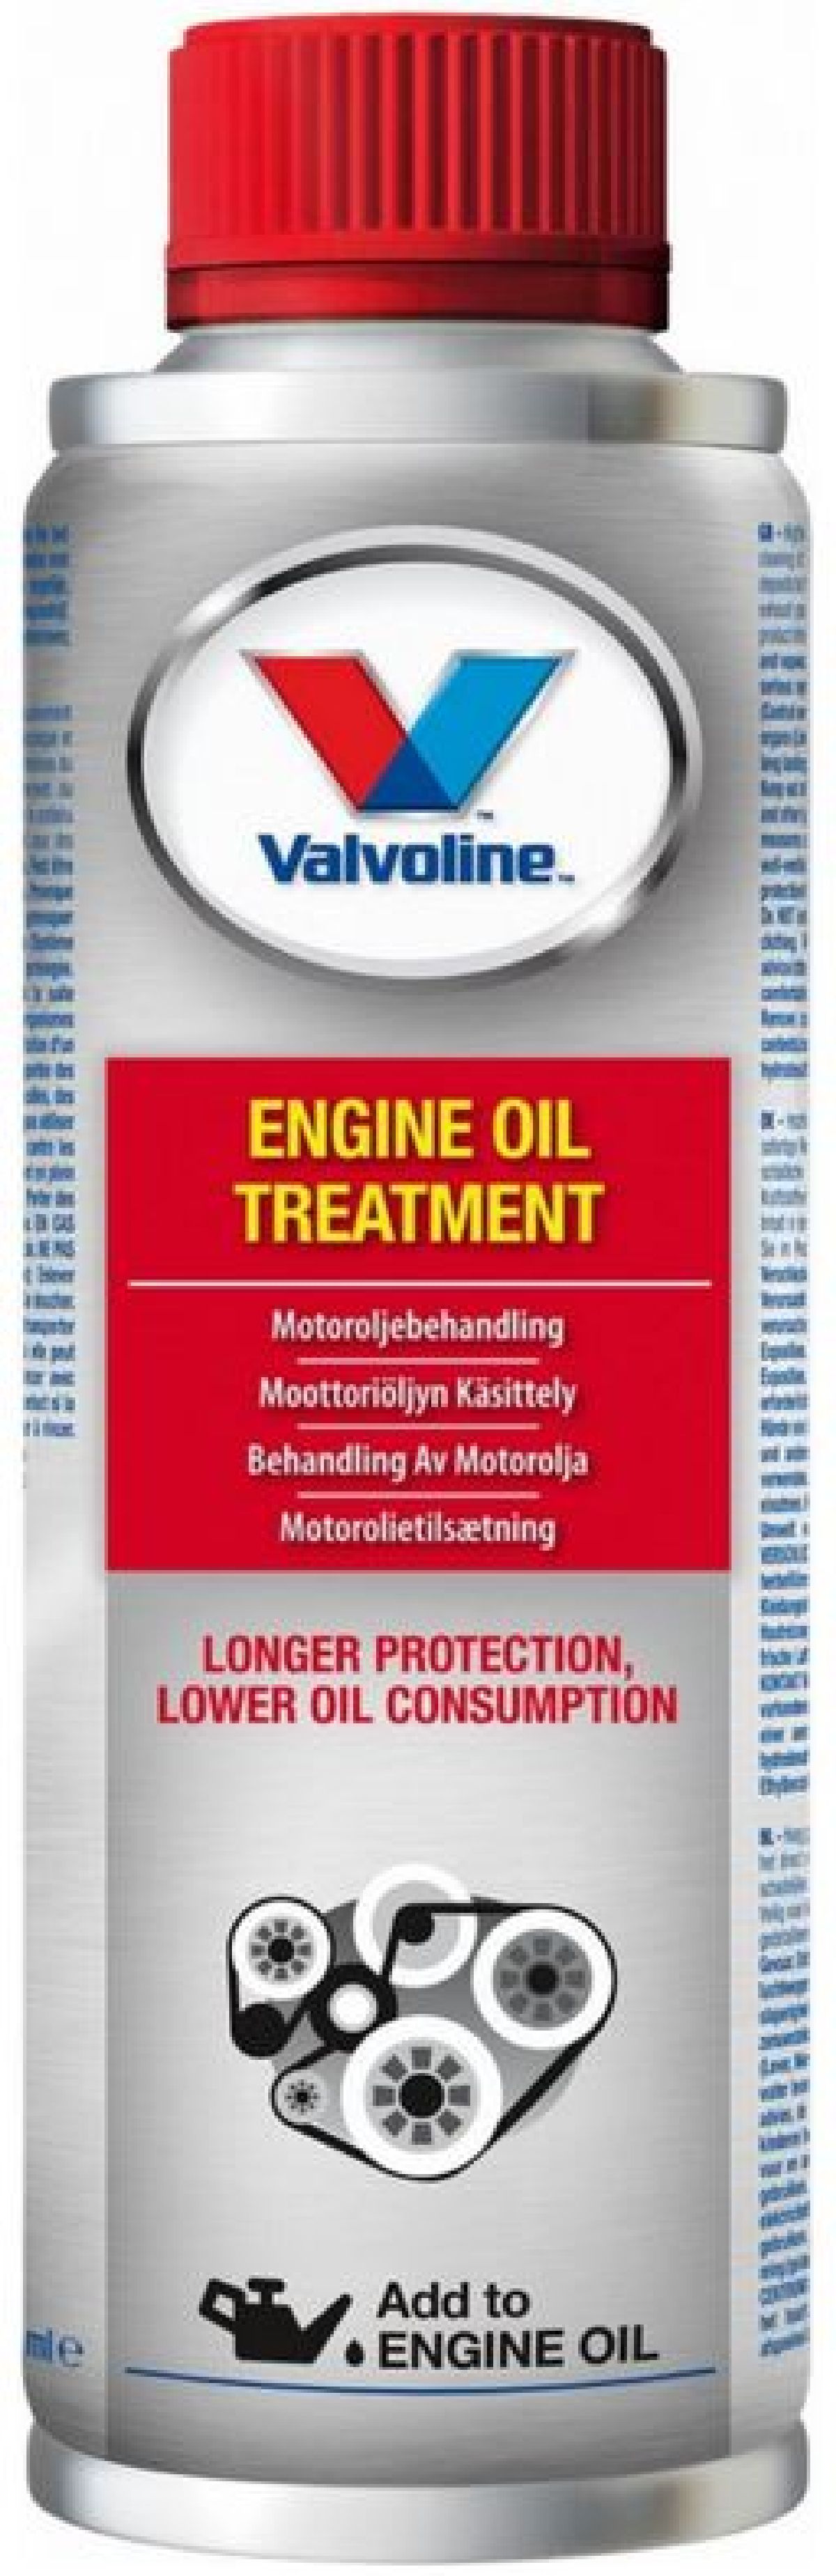 Valvoline Engine Oil Treatment